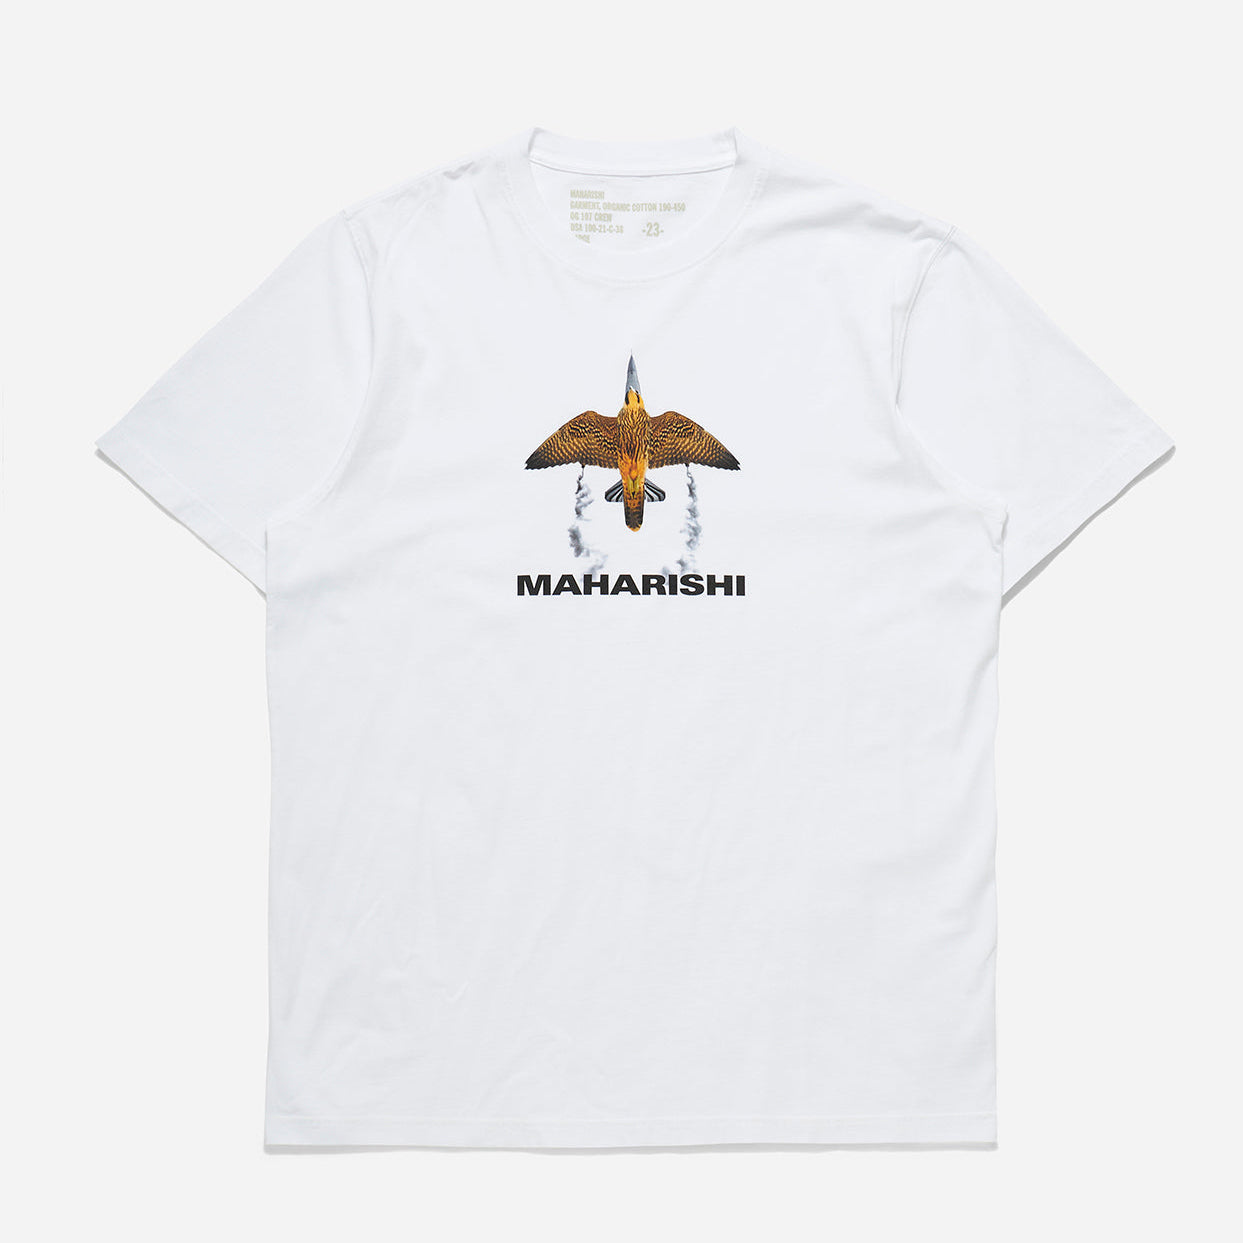 Maharishi Flight T-Shirt